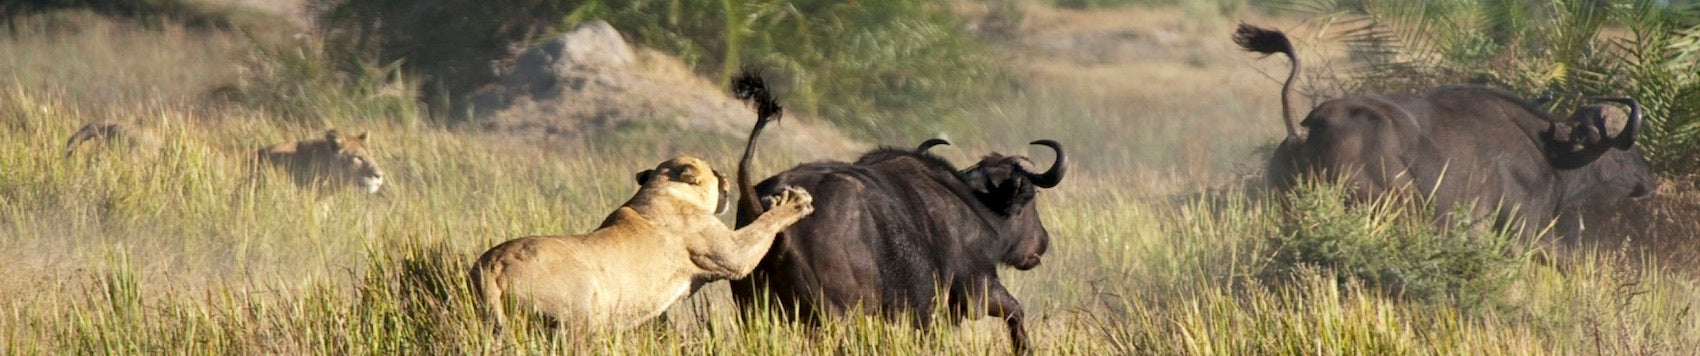 Lionnes qui chassent un buffle dans la savane